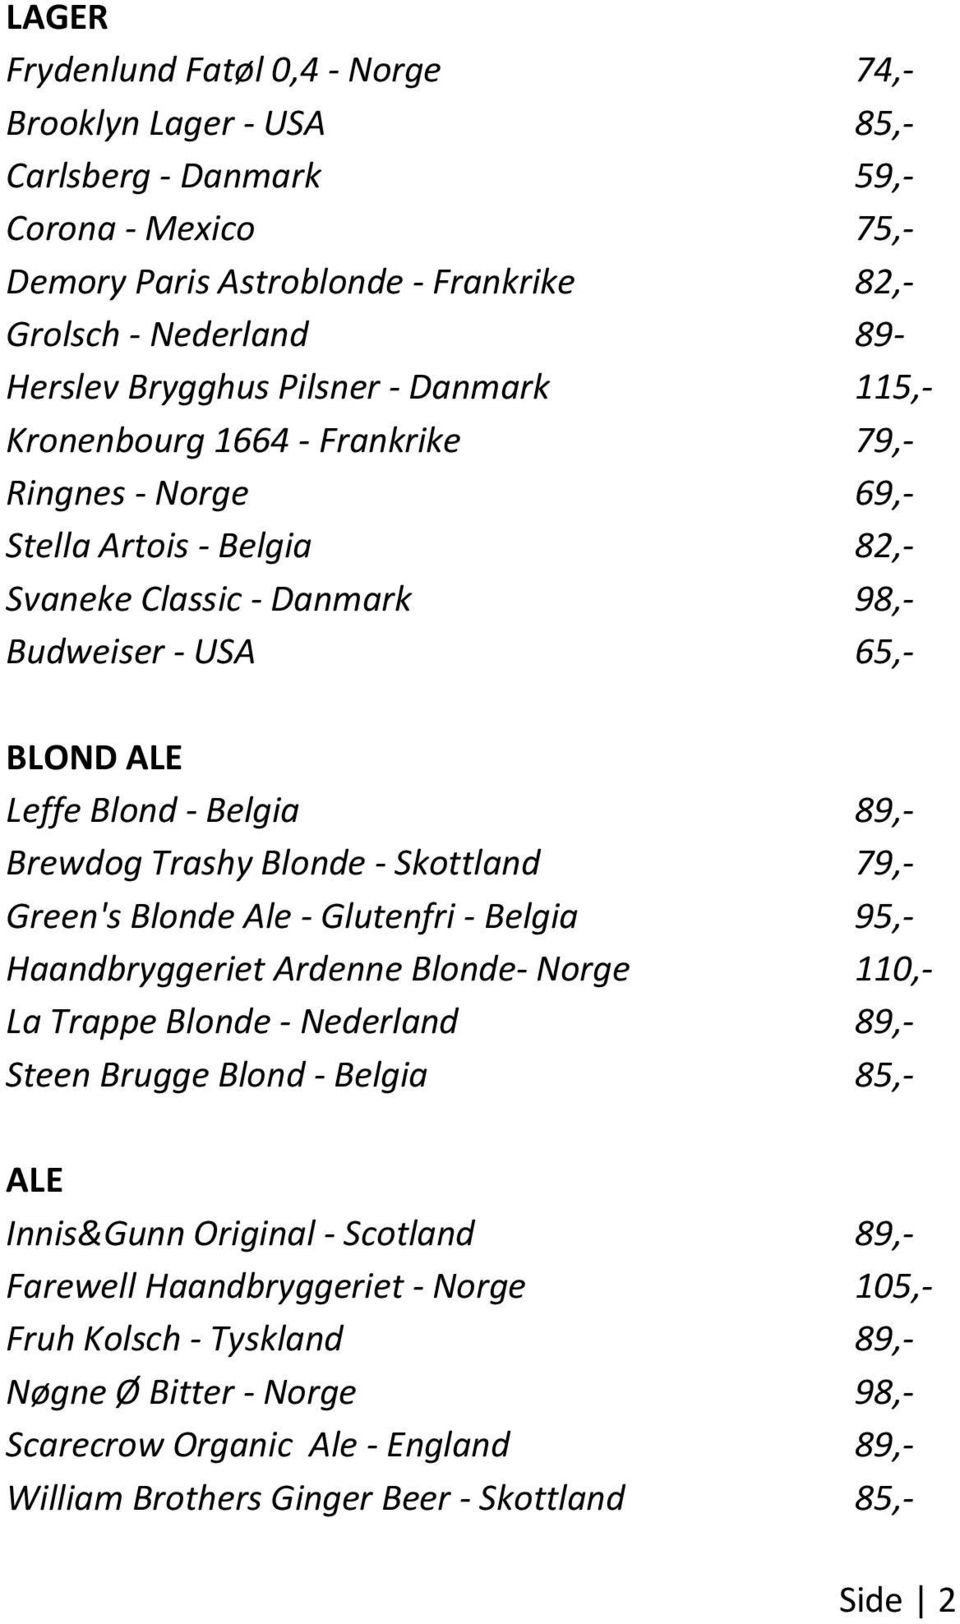 Brewdog Trashy Blonde - Skottland 79,- Green's Blonde Ale - Glutenfri - Belgia 95,- Haandbryggeriet Ardenne Blonde- Norge 110,- La Trappe Blonde - Nederland 89,- Steen Brugge Blond - Belgia 85,- ALE